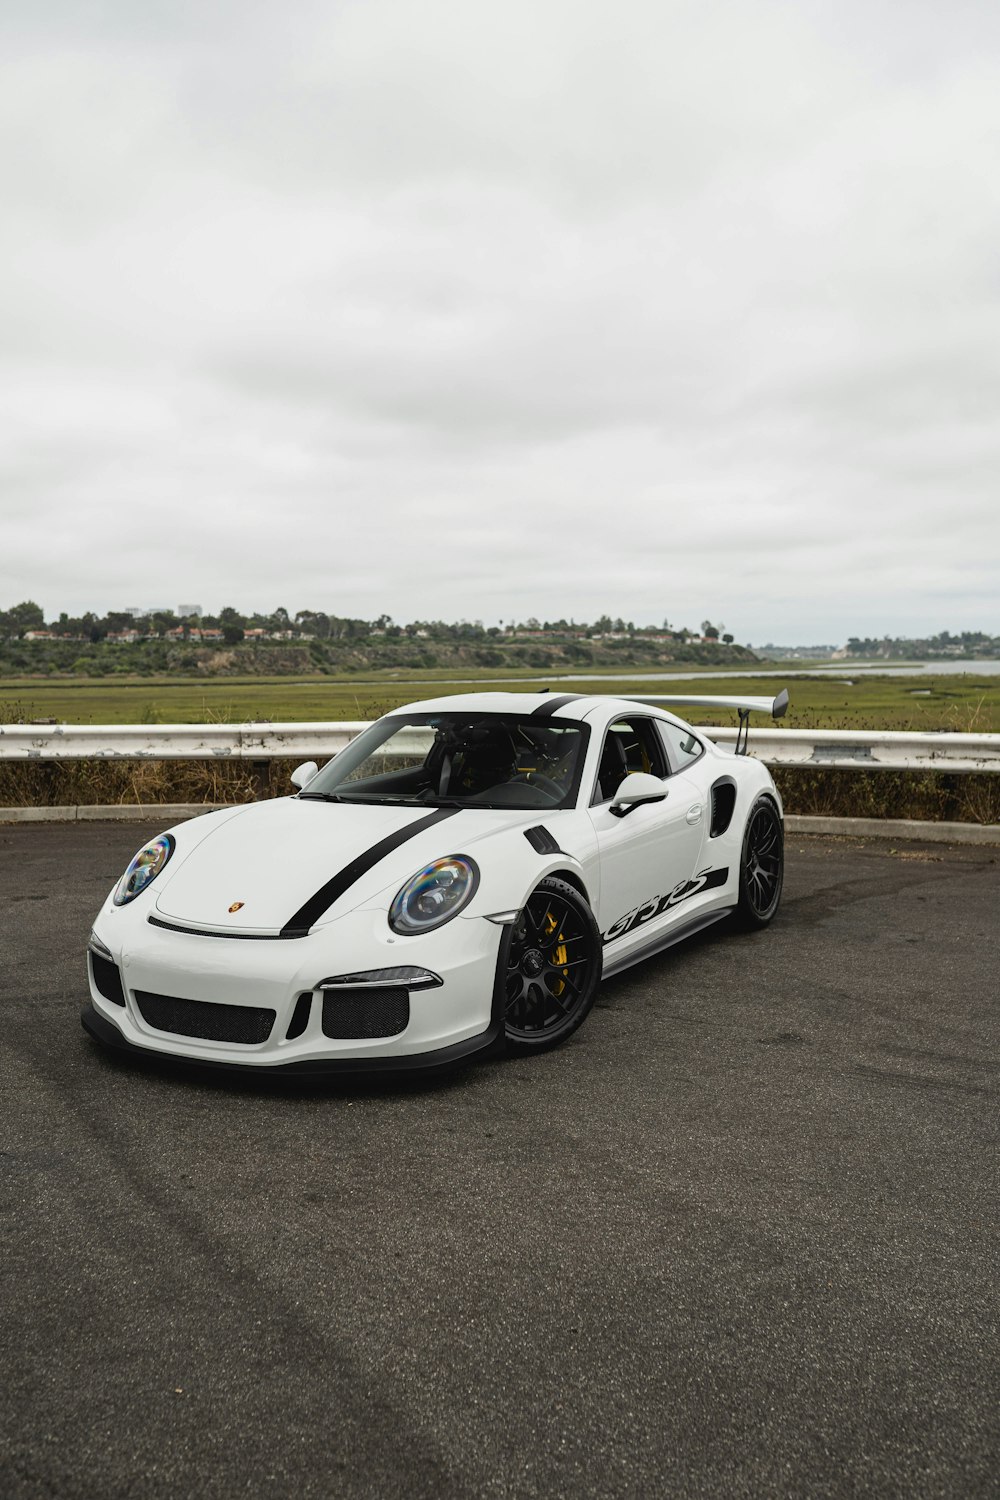 Porsche 911 blanche sur la route pendant la journée